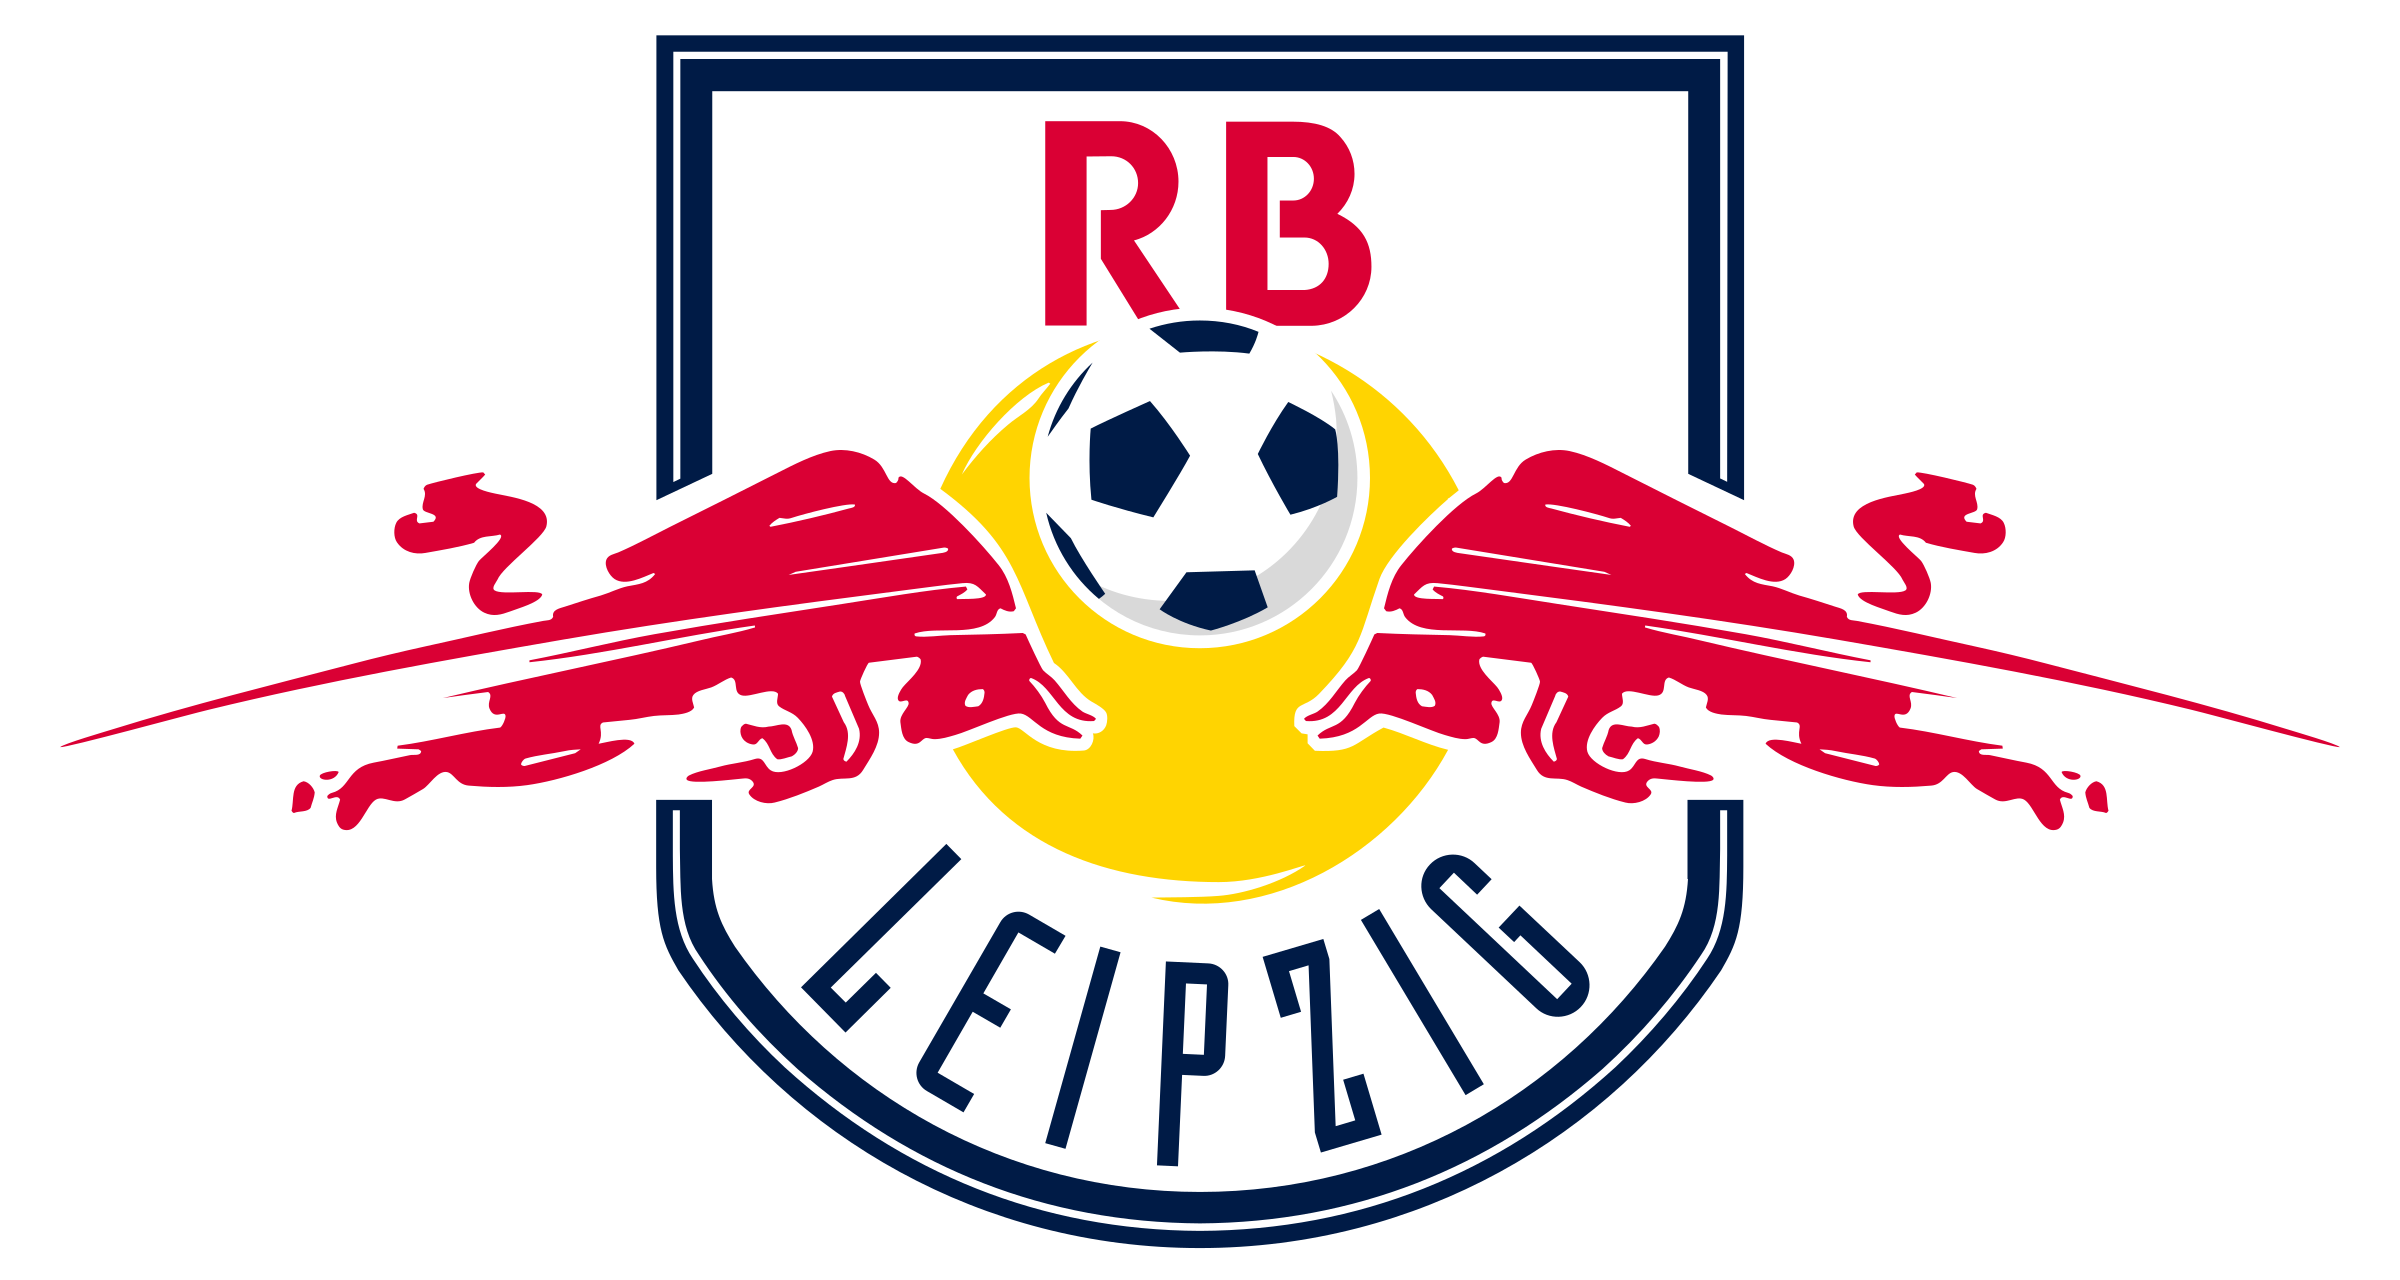 Red Bull Leipzig Logo Black And White - Red Bull New York (2400x1280)